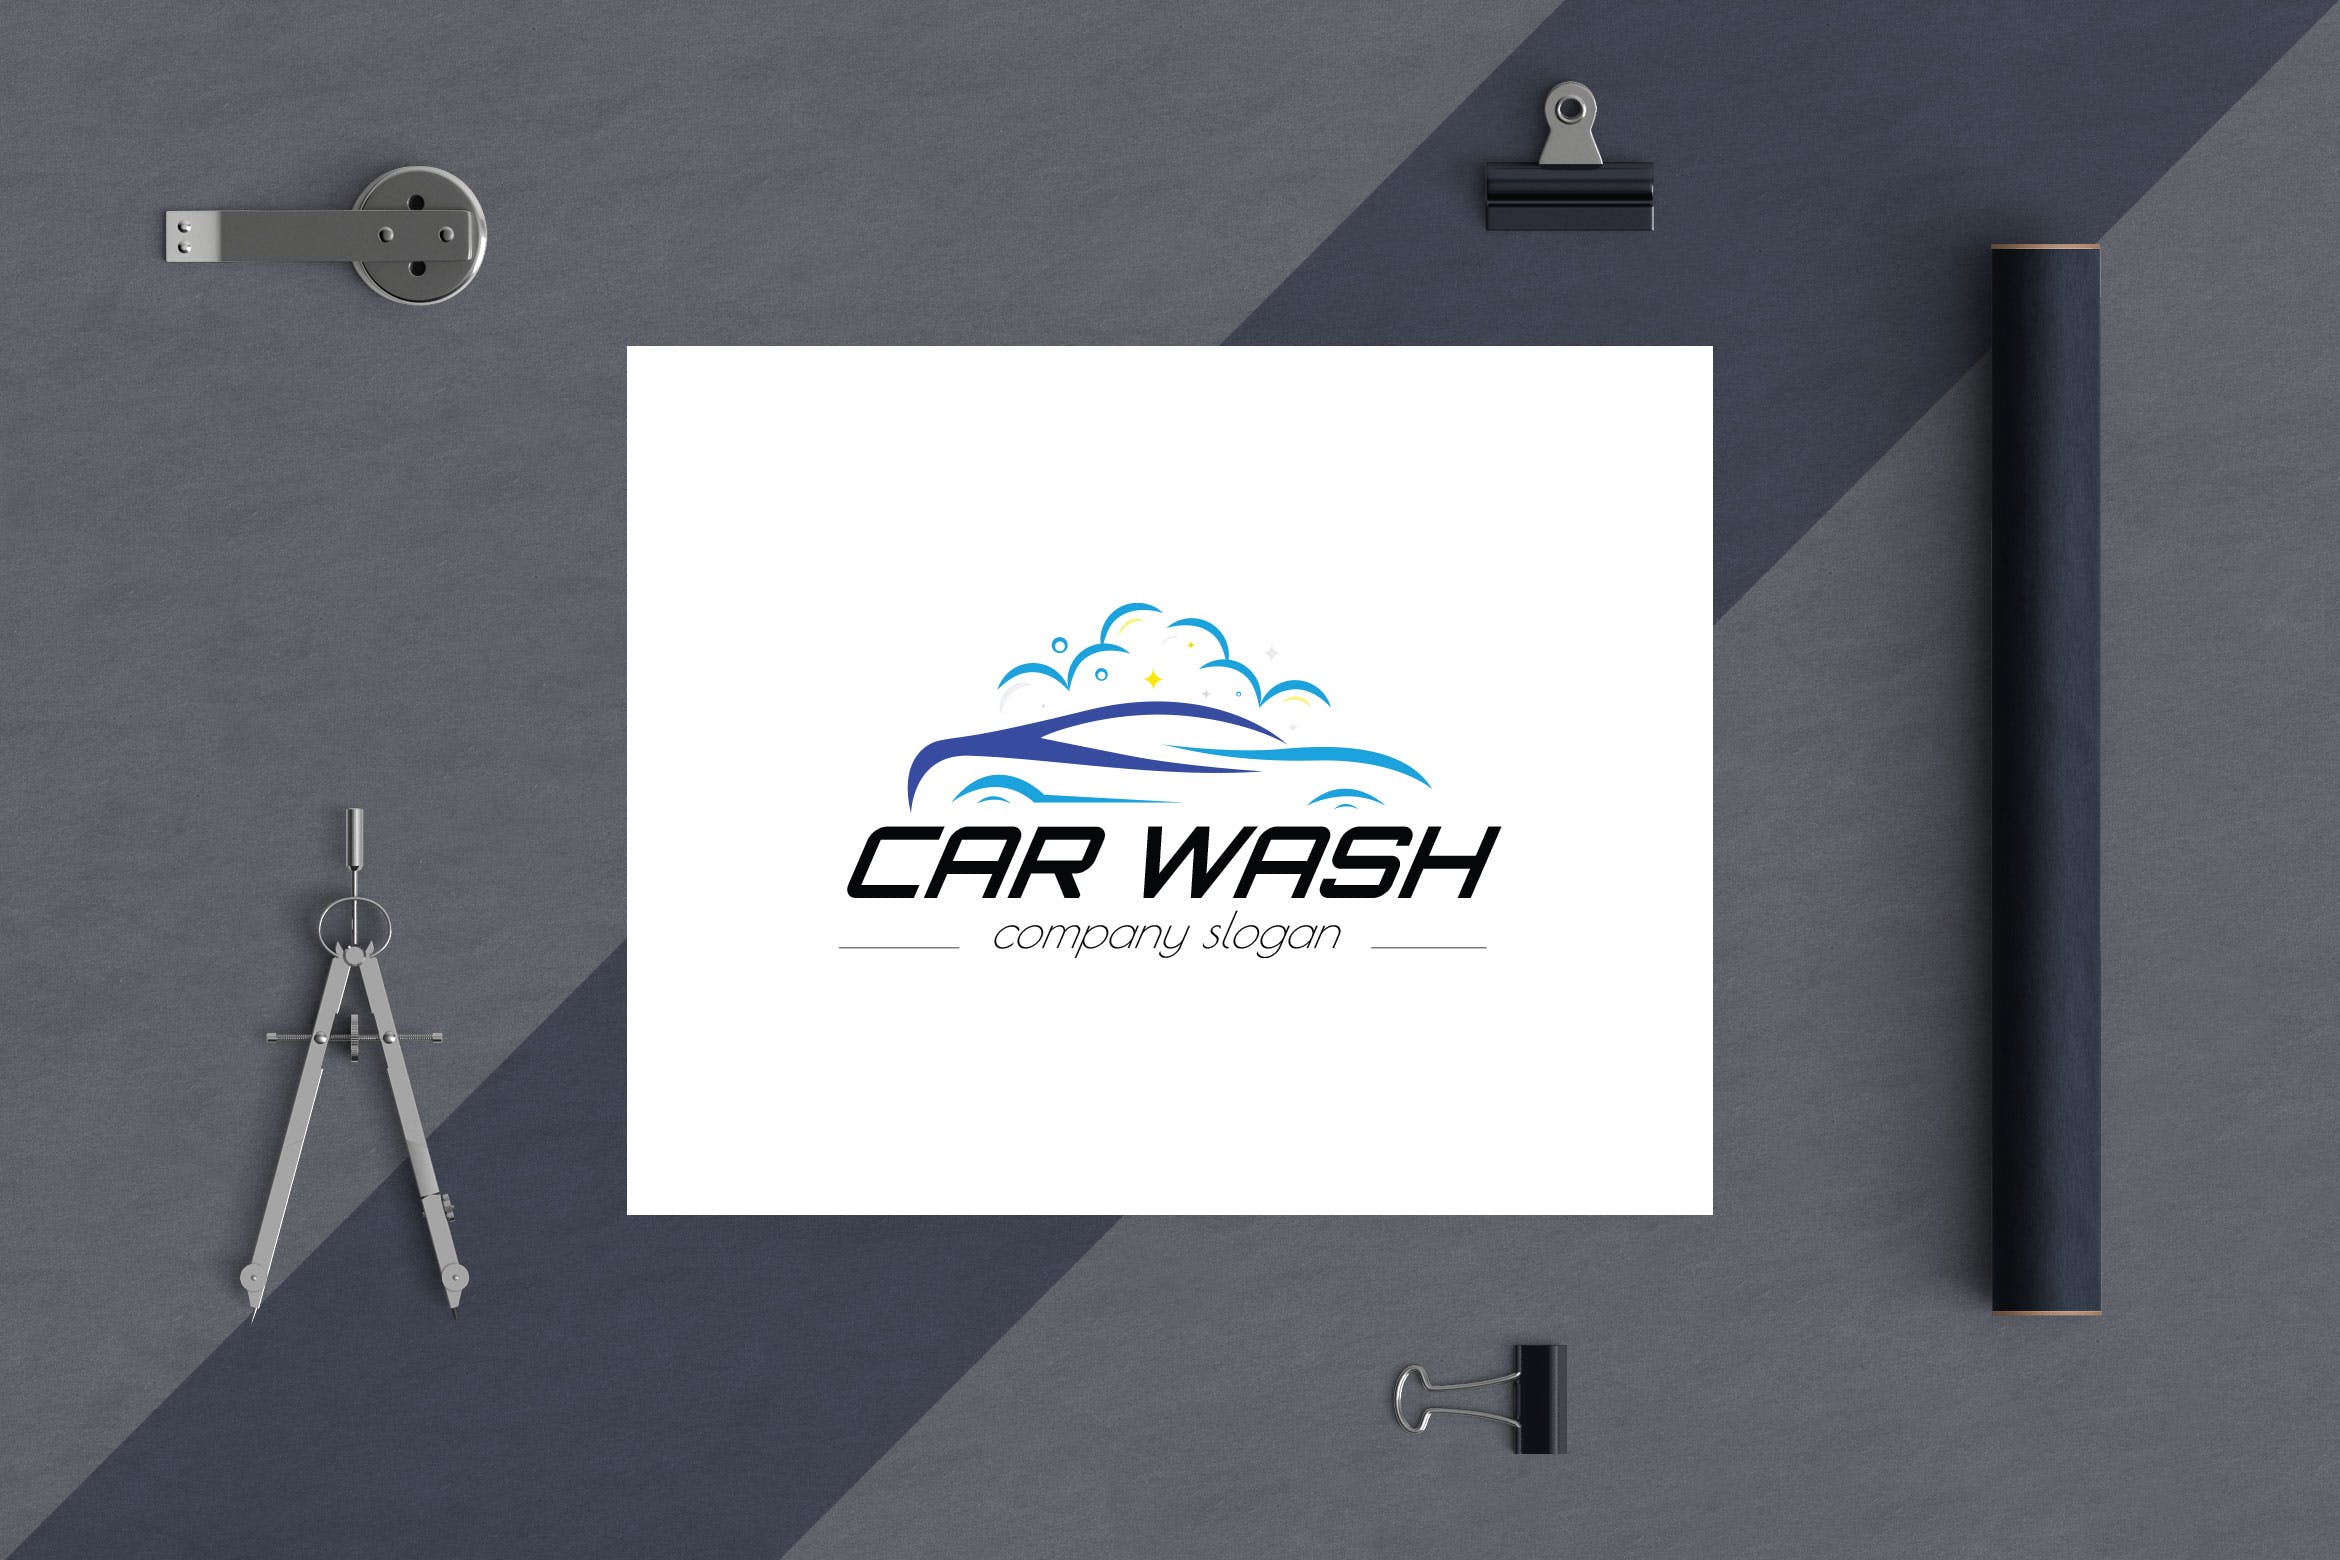 洗车店品牌Logo设计非凡图库精选模板 Car Wash Business Logo Template插图